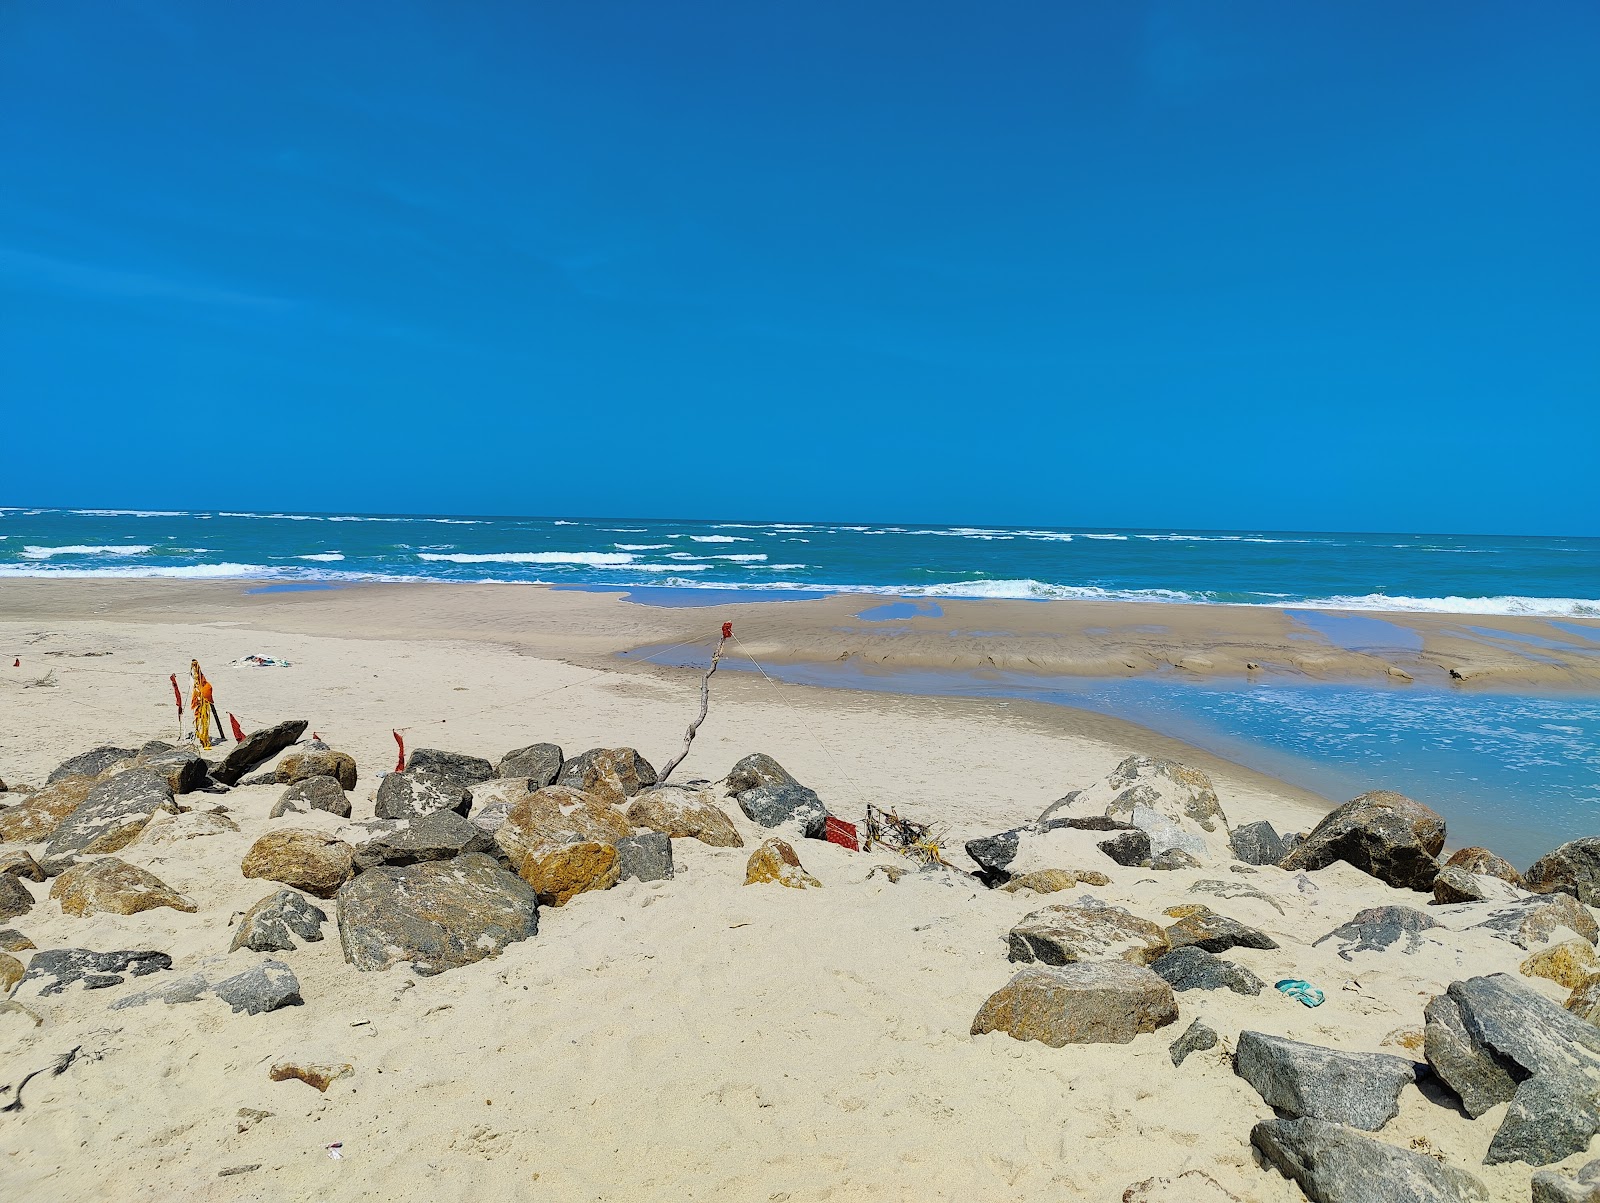 Arichal Munai Beach'in fotoğrafı geniş plaj ile birlikte